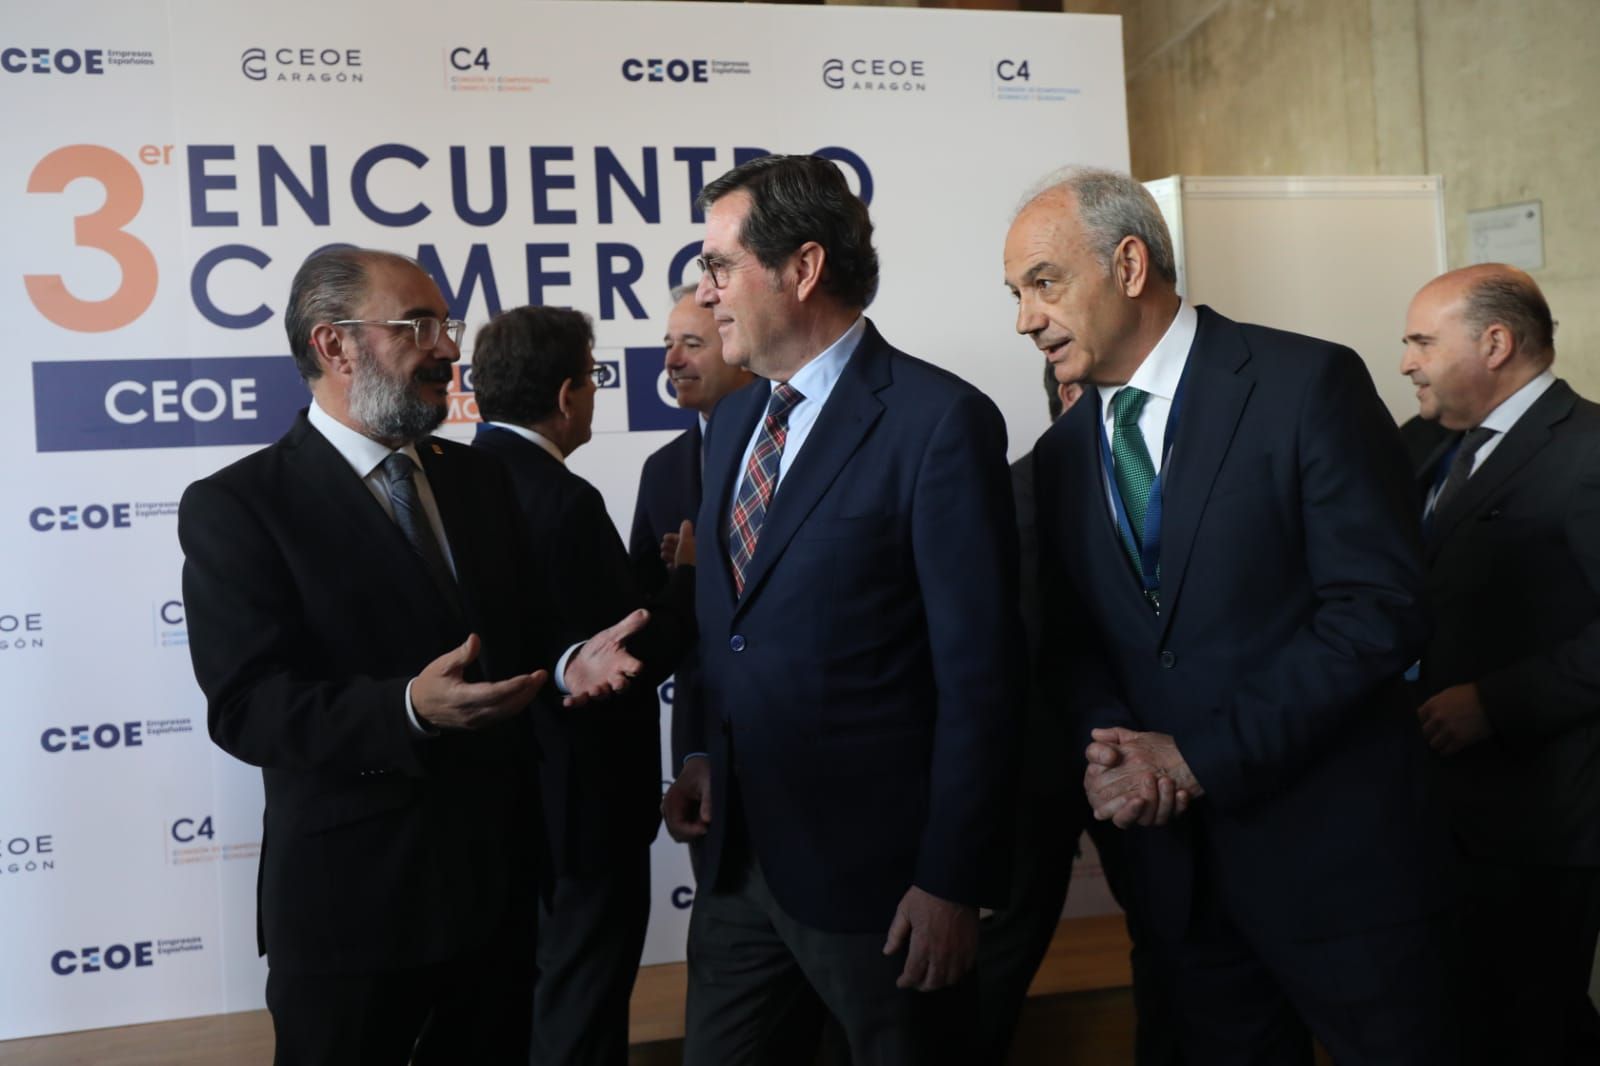 Garamendi inaugura en Zaragoza el III Encuentro Comercio